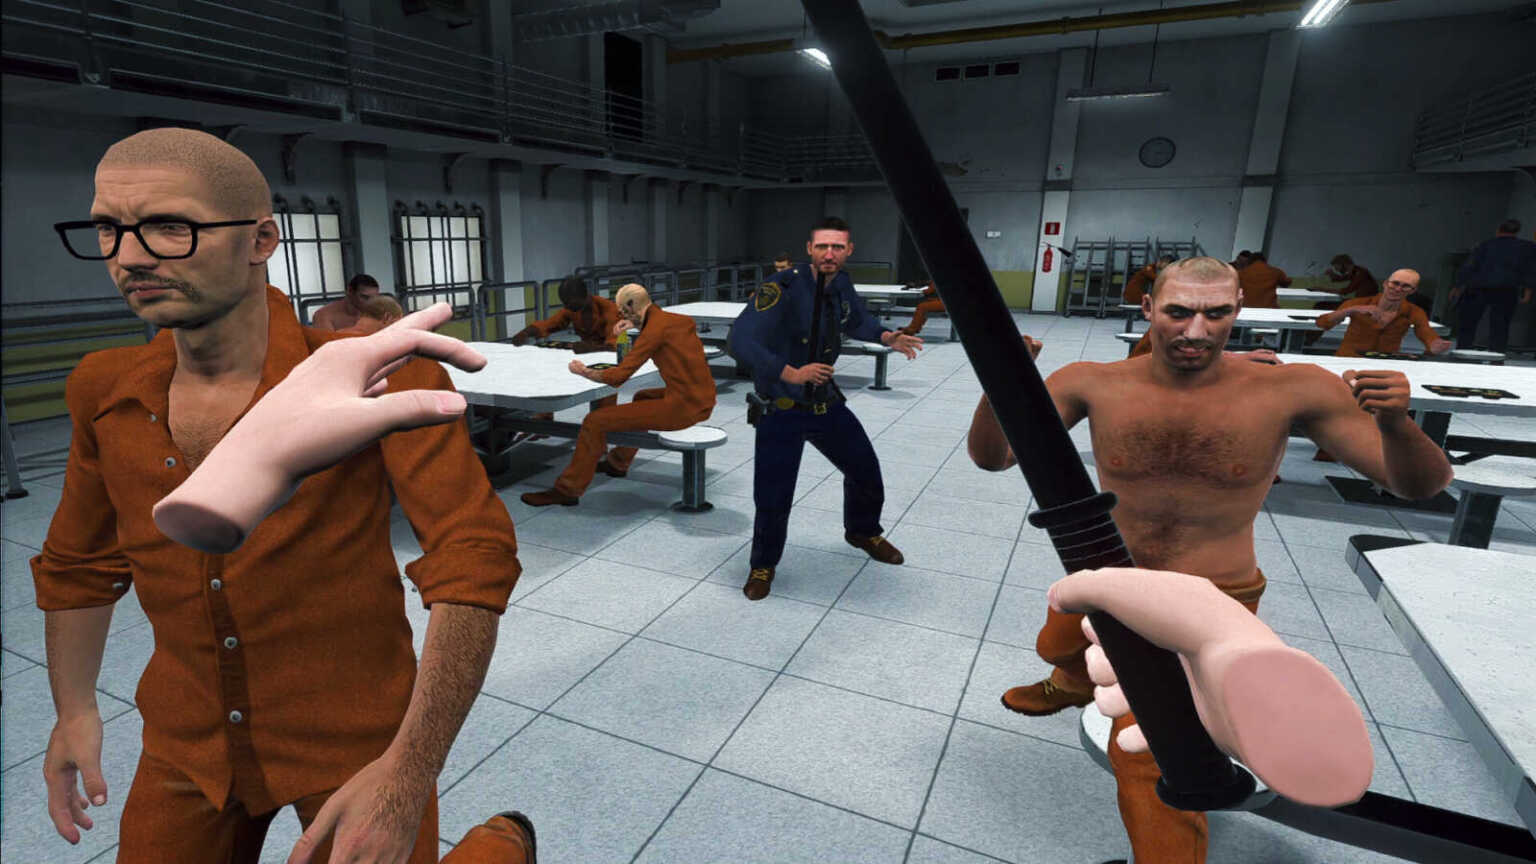 prison simulator vr 1